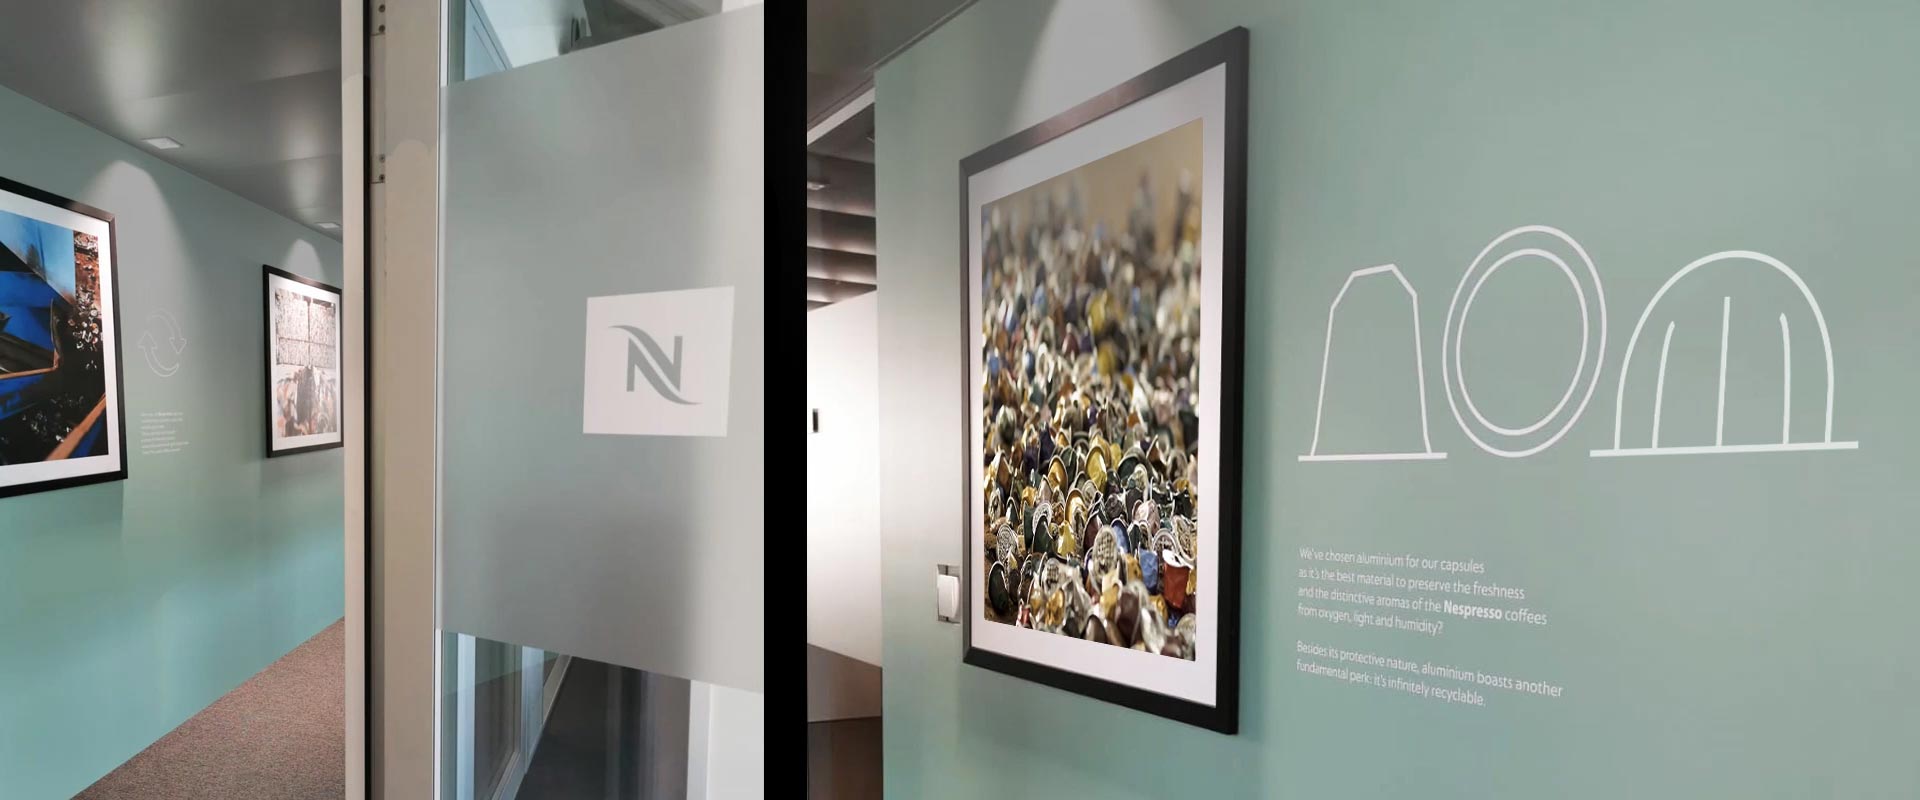 Immagini ed elementi grafici dei nuovi uffici Nespresso